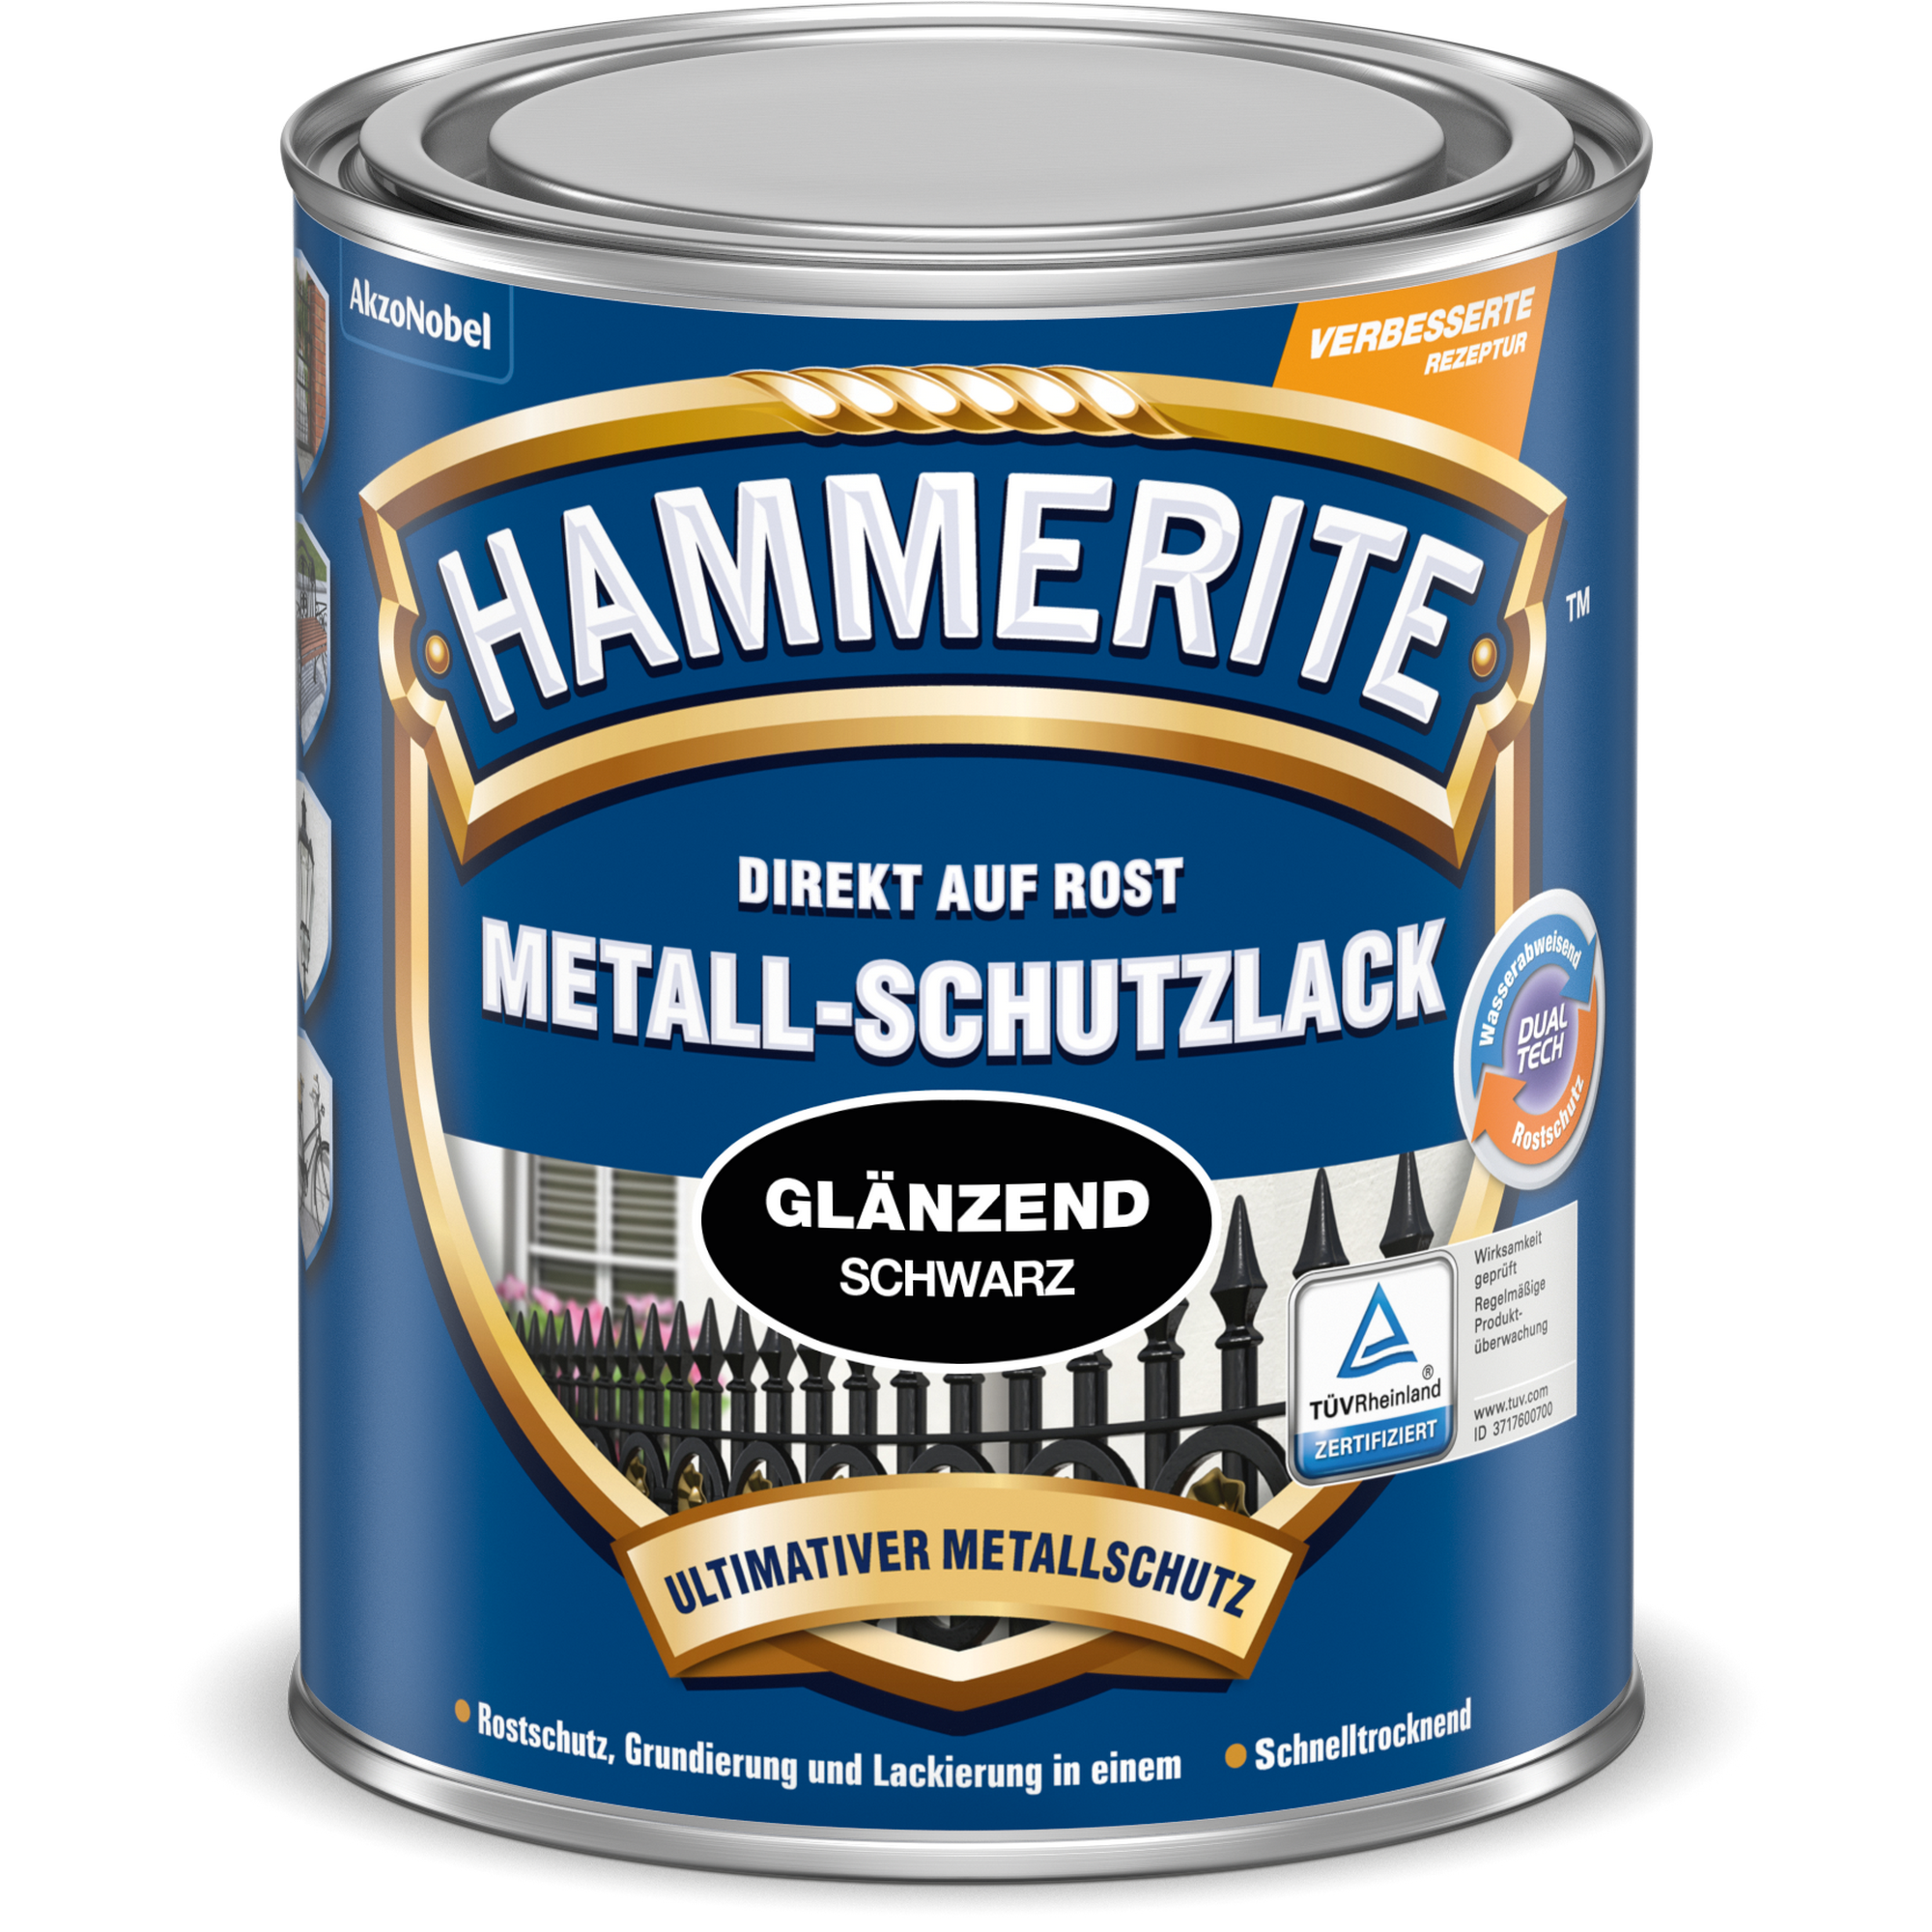 Metallschutzlack schwarz glänzend 750 ml + product picture